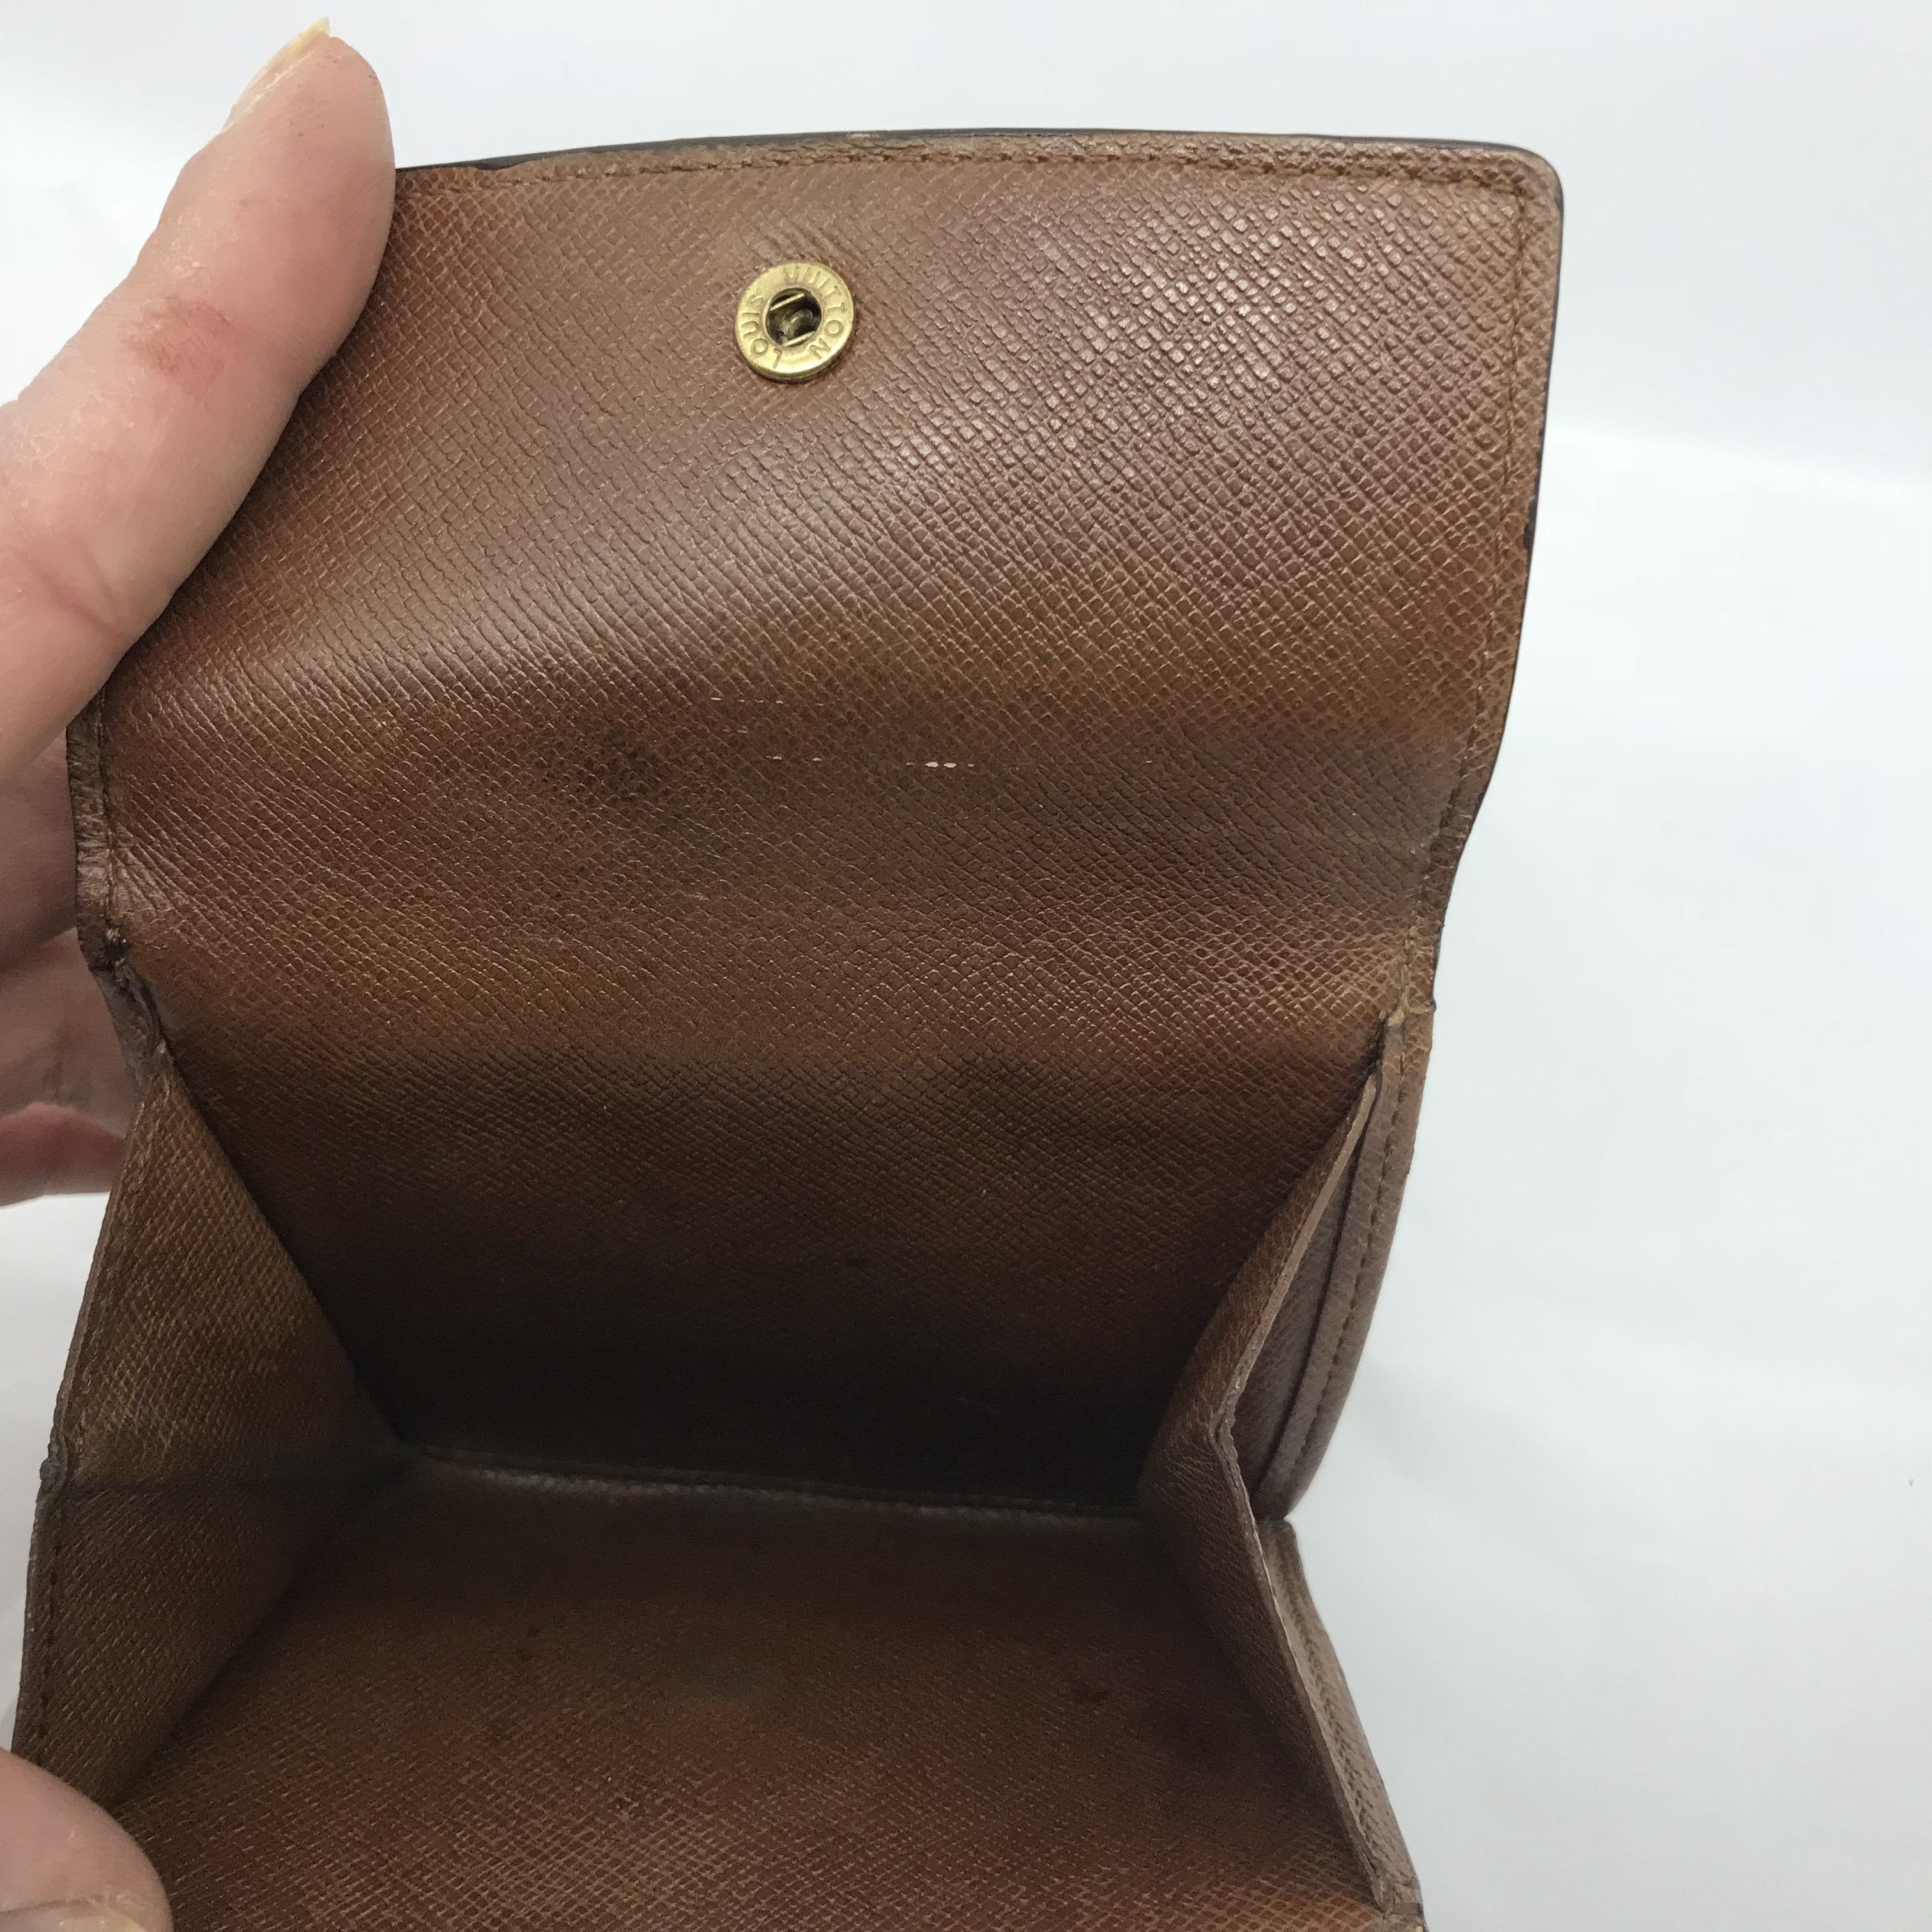 Louis Vuitton, Bags, Authentic Louis Vuitton Bifold Compact Monogram  Wallet